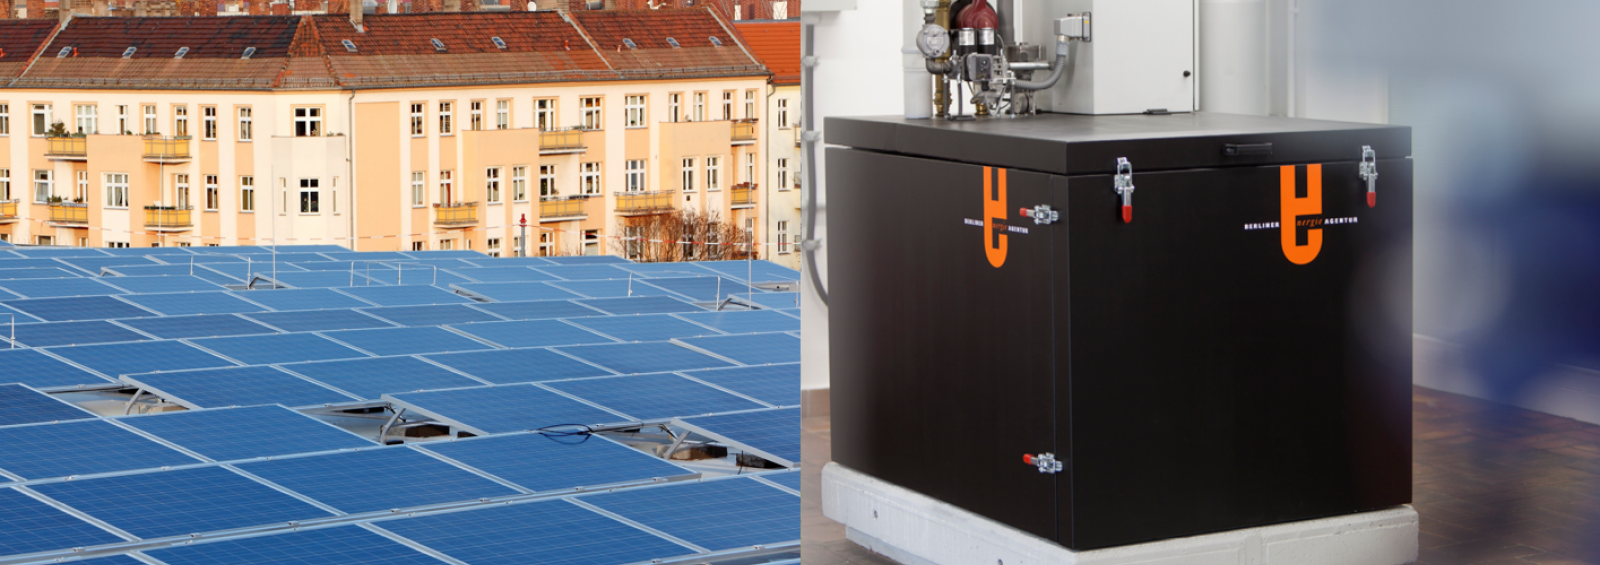 Solarstrom- und BHKW-Check der Berliner Energieagentur